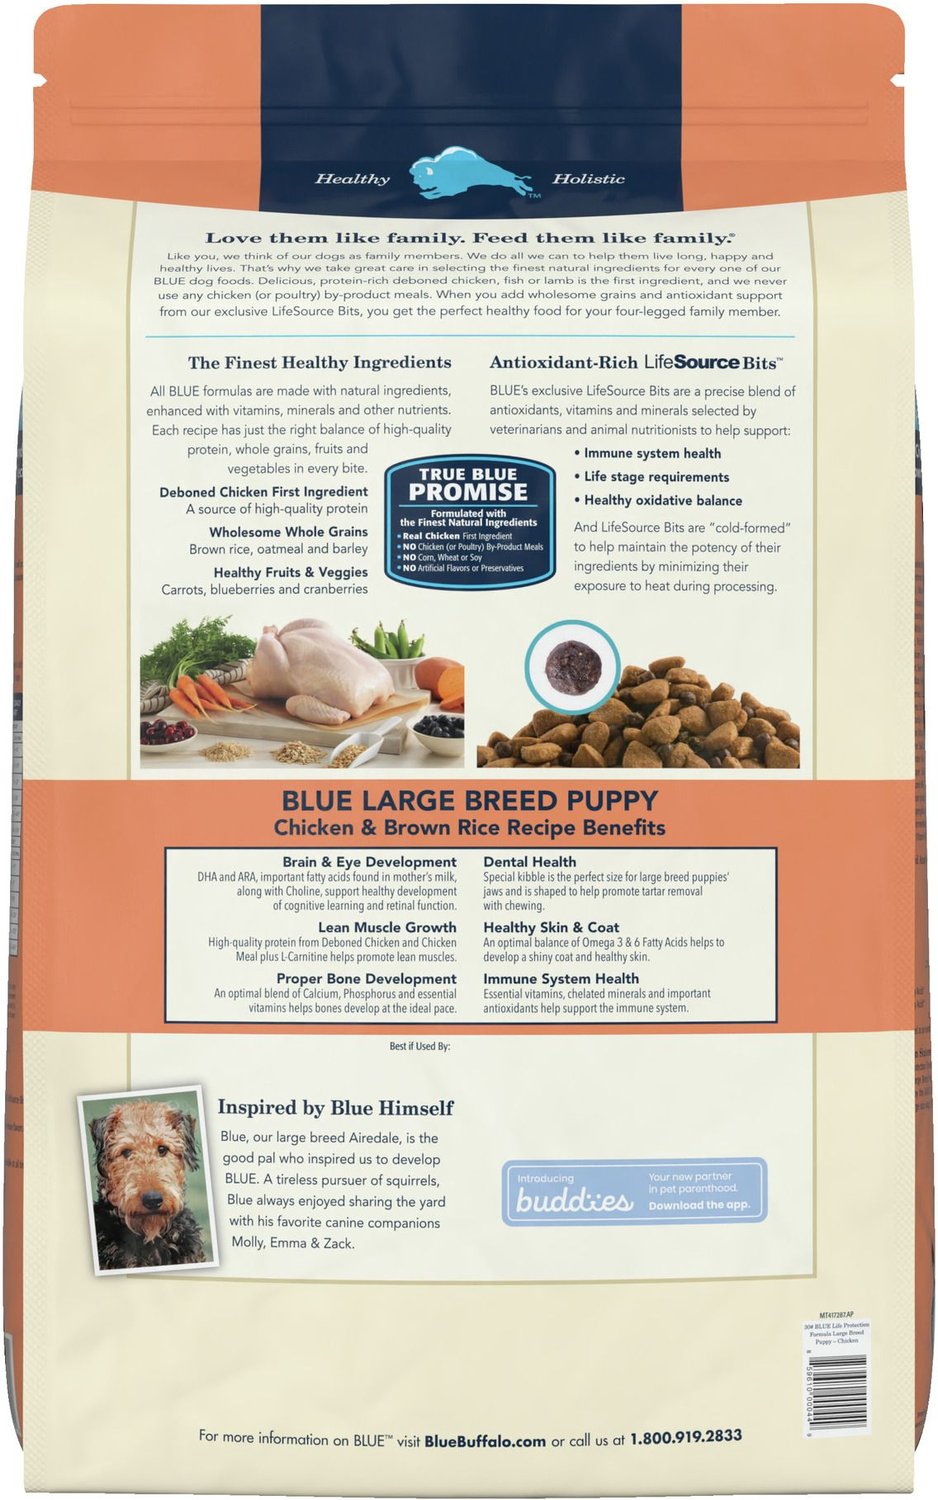 Blue Buffalo Wilderness Puppy Food Feeding Chart